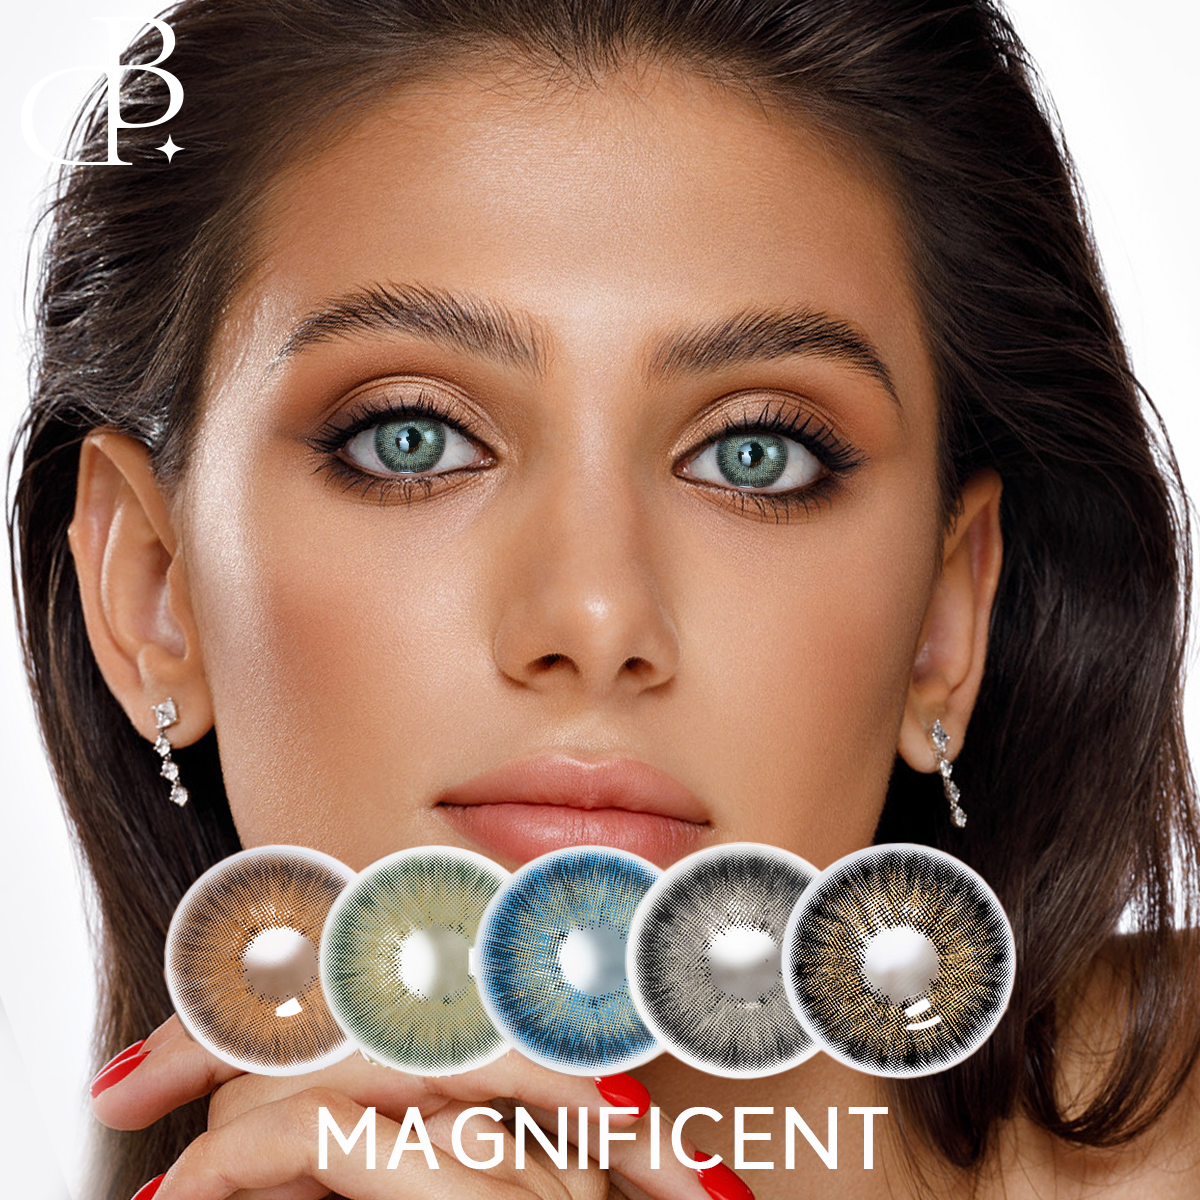 Magnificent 14.2mm taun-taon Big Eyes contact lenses Pakyawan Taunan Soft dark gray contact lens Natural Color Contact